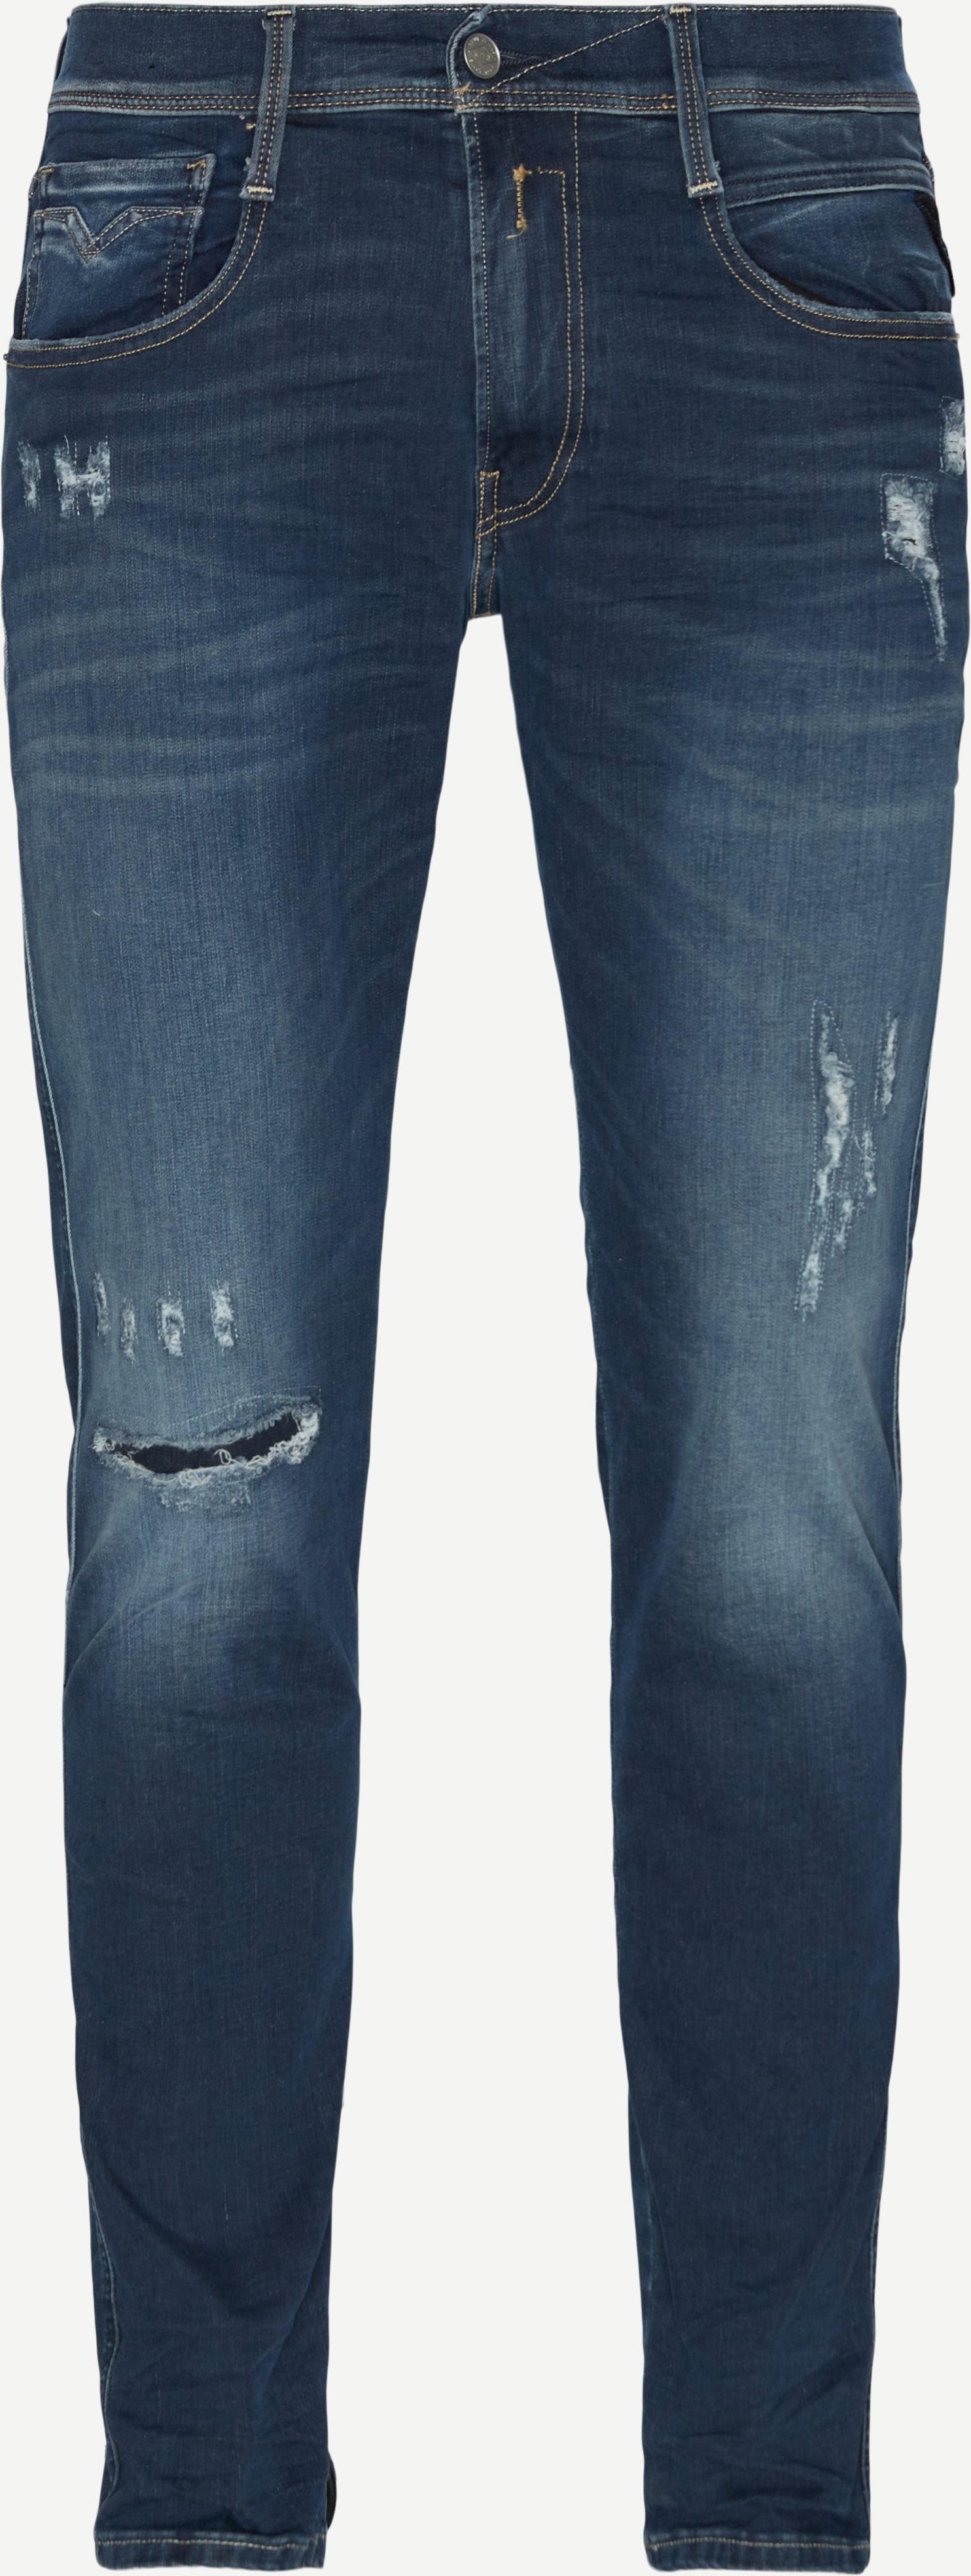 661 XI20 Anbass Hyperflex-Jeans - Jeans - Slim fit - Jeans-Blau